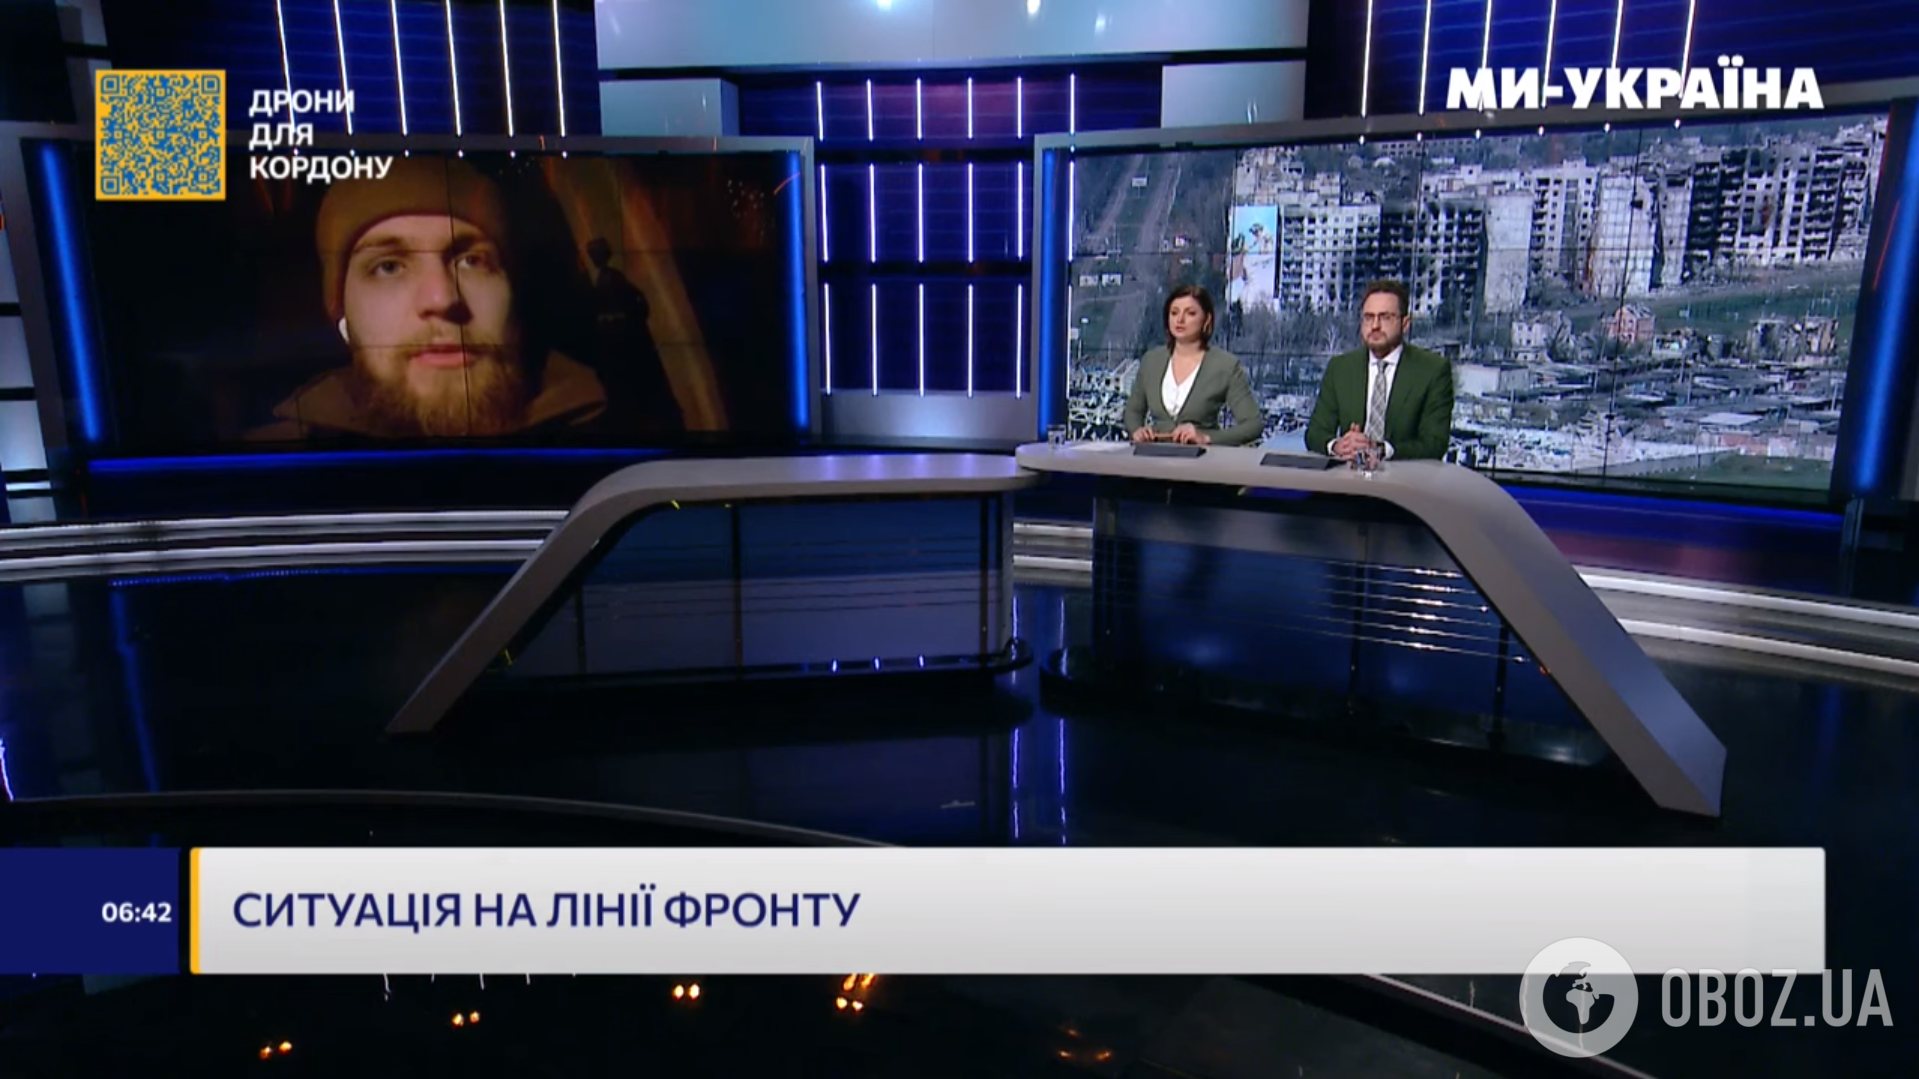 Олександр Бородін в ефірі українського телеканалу